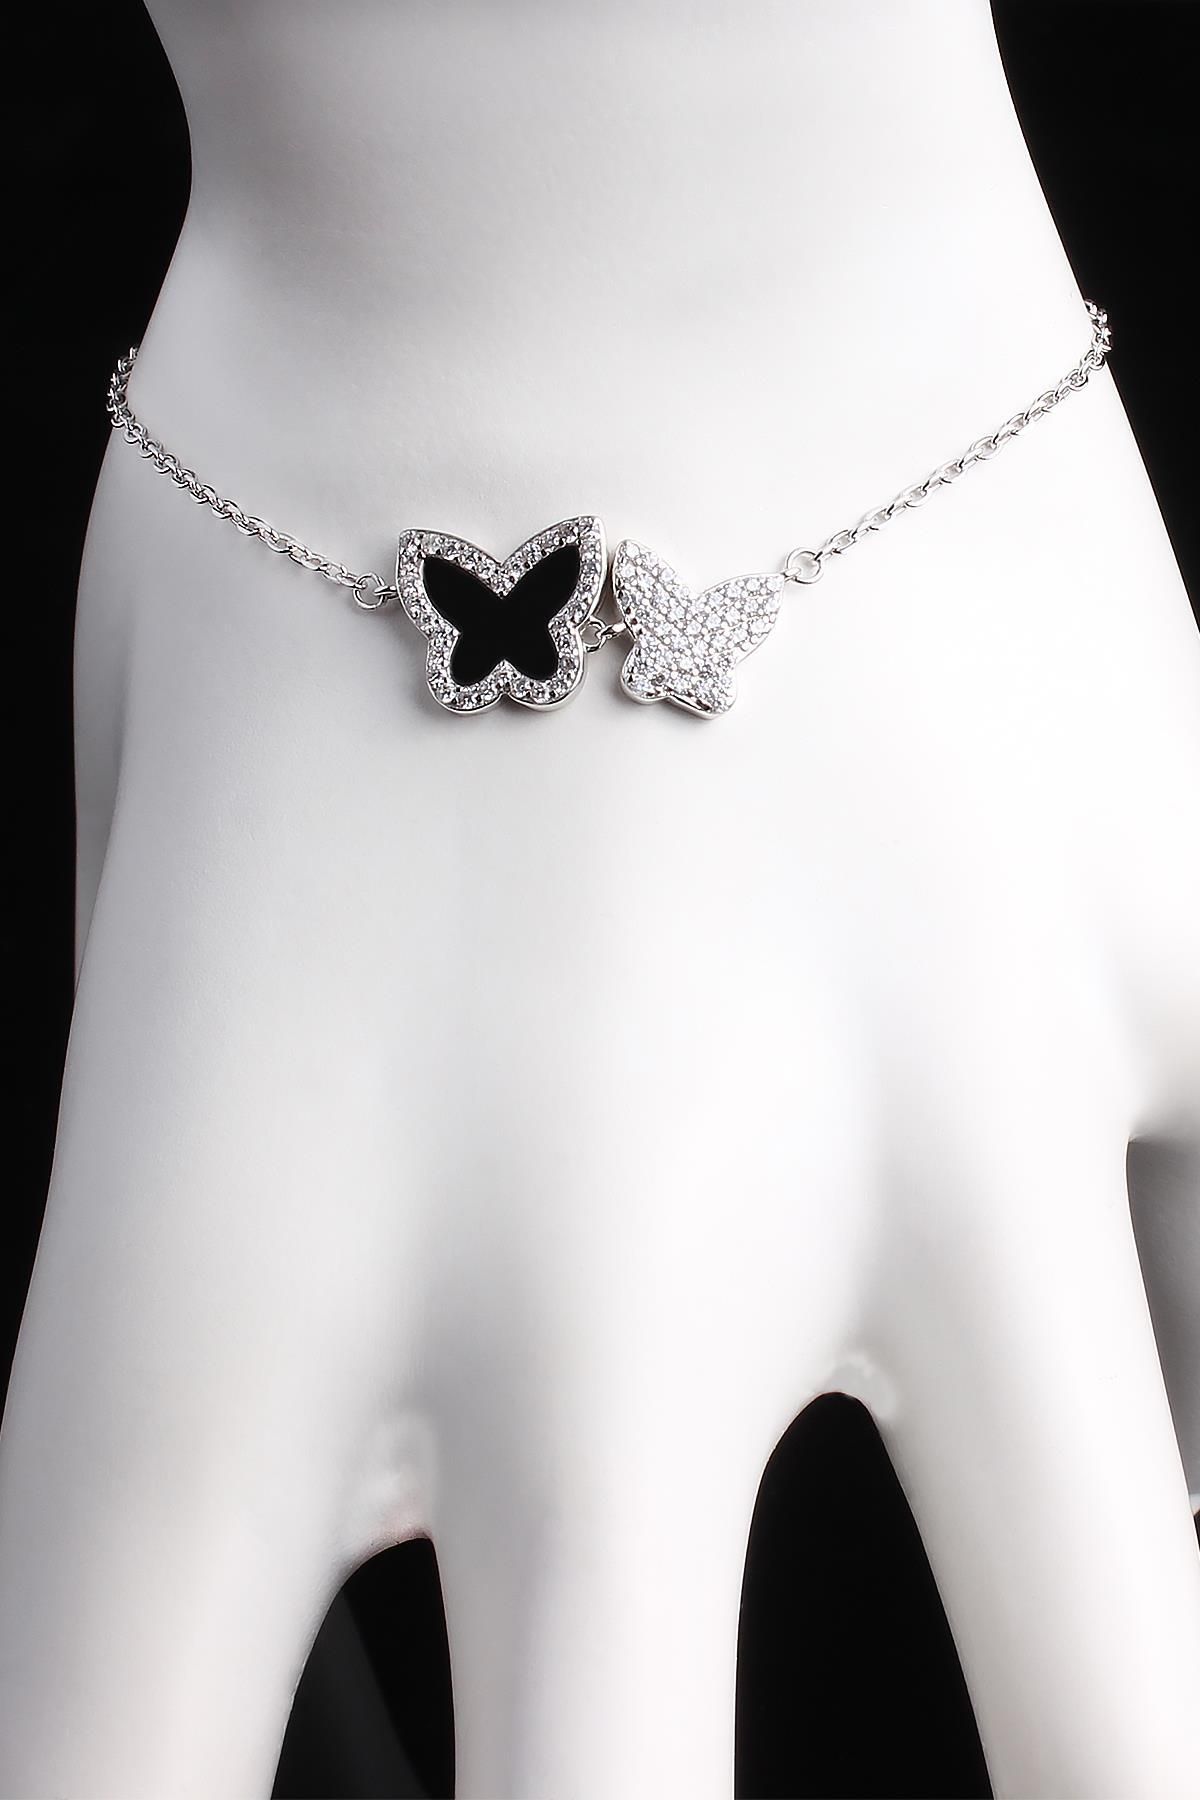 Omar Silver Kadın Ithal Zirkon Taşlı Kelebek Model Gümüş Bileklik